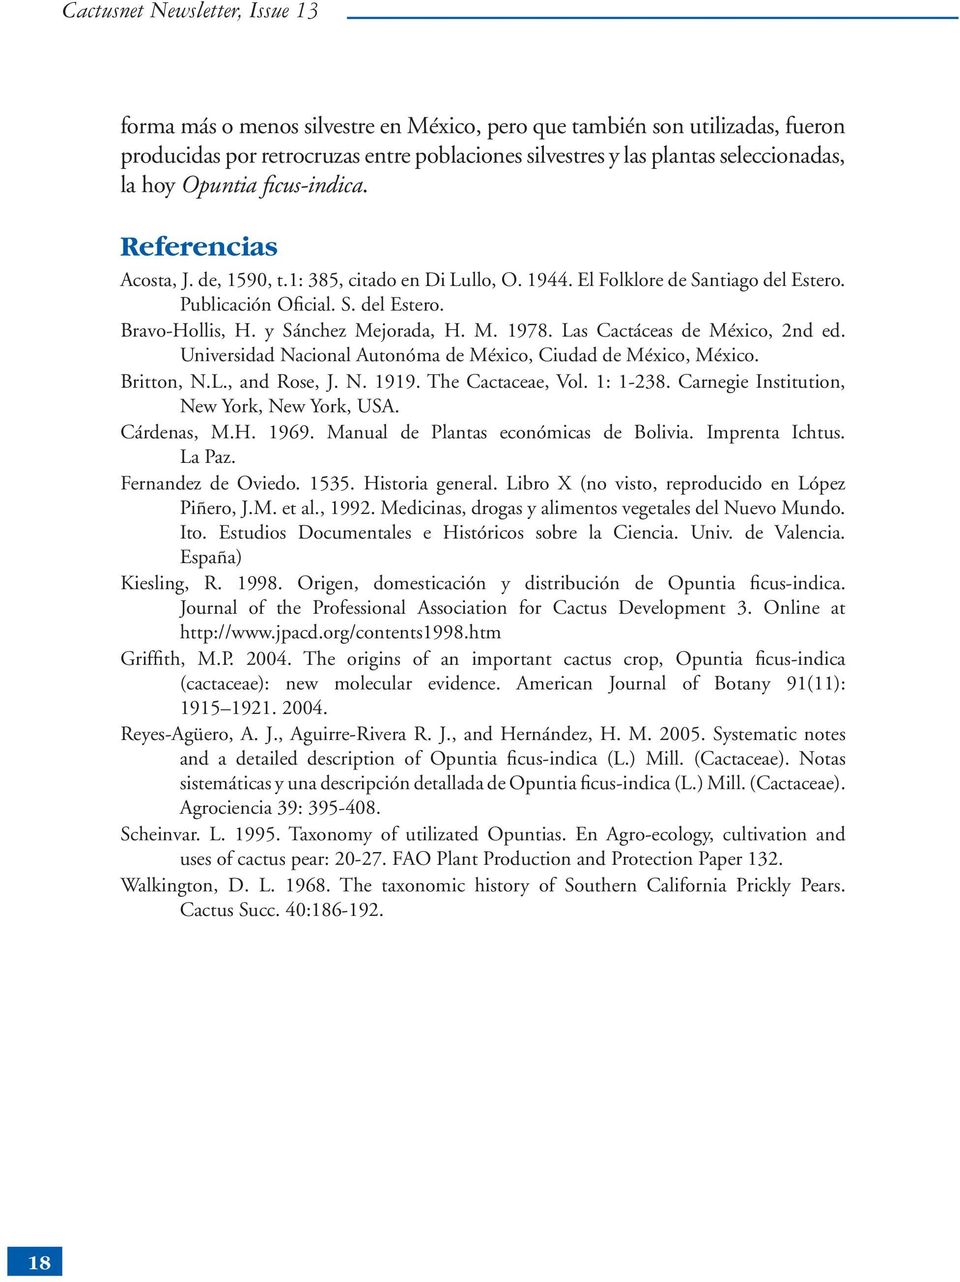 y Sánchez Mejorada, H. M. 1978. Las Cactáceas de México, 2nd ed. Universidad Nacional Autonóma de México, Ciudad de México, México. Britton, N.L., and Rose, J. N. 1919. The Cactaceae, Vol. 1: 1-238.